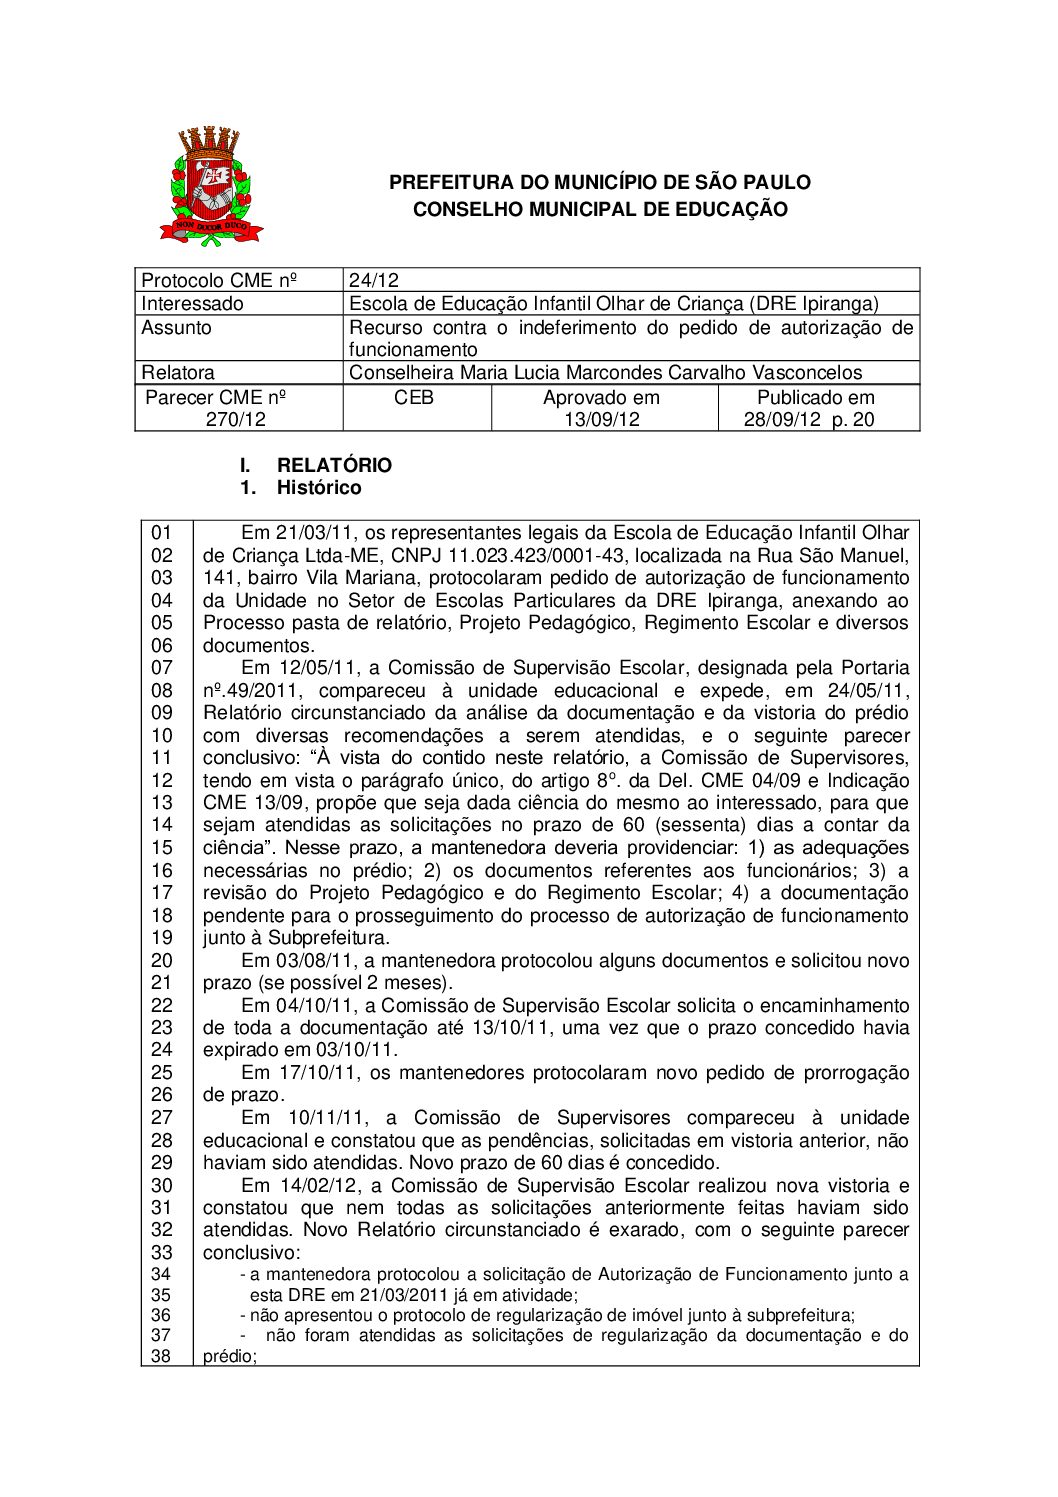 Parecer CME nº 270/2012 - Escola de Educação Infantil Olhar de Criança (DRE Ipiranga) - Recurso contra o indeferimento do pedido de autorização de funcionamento 